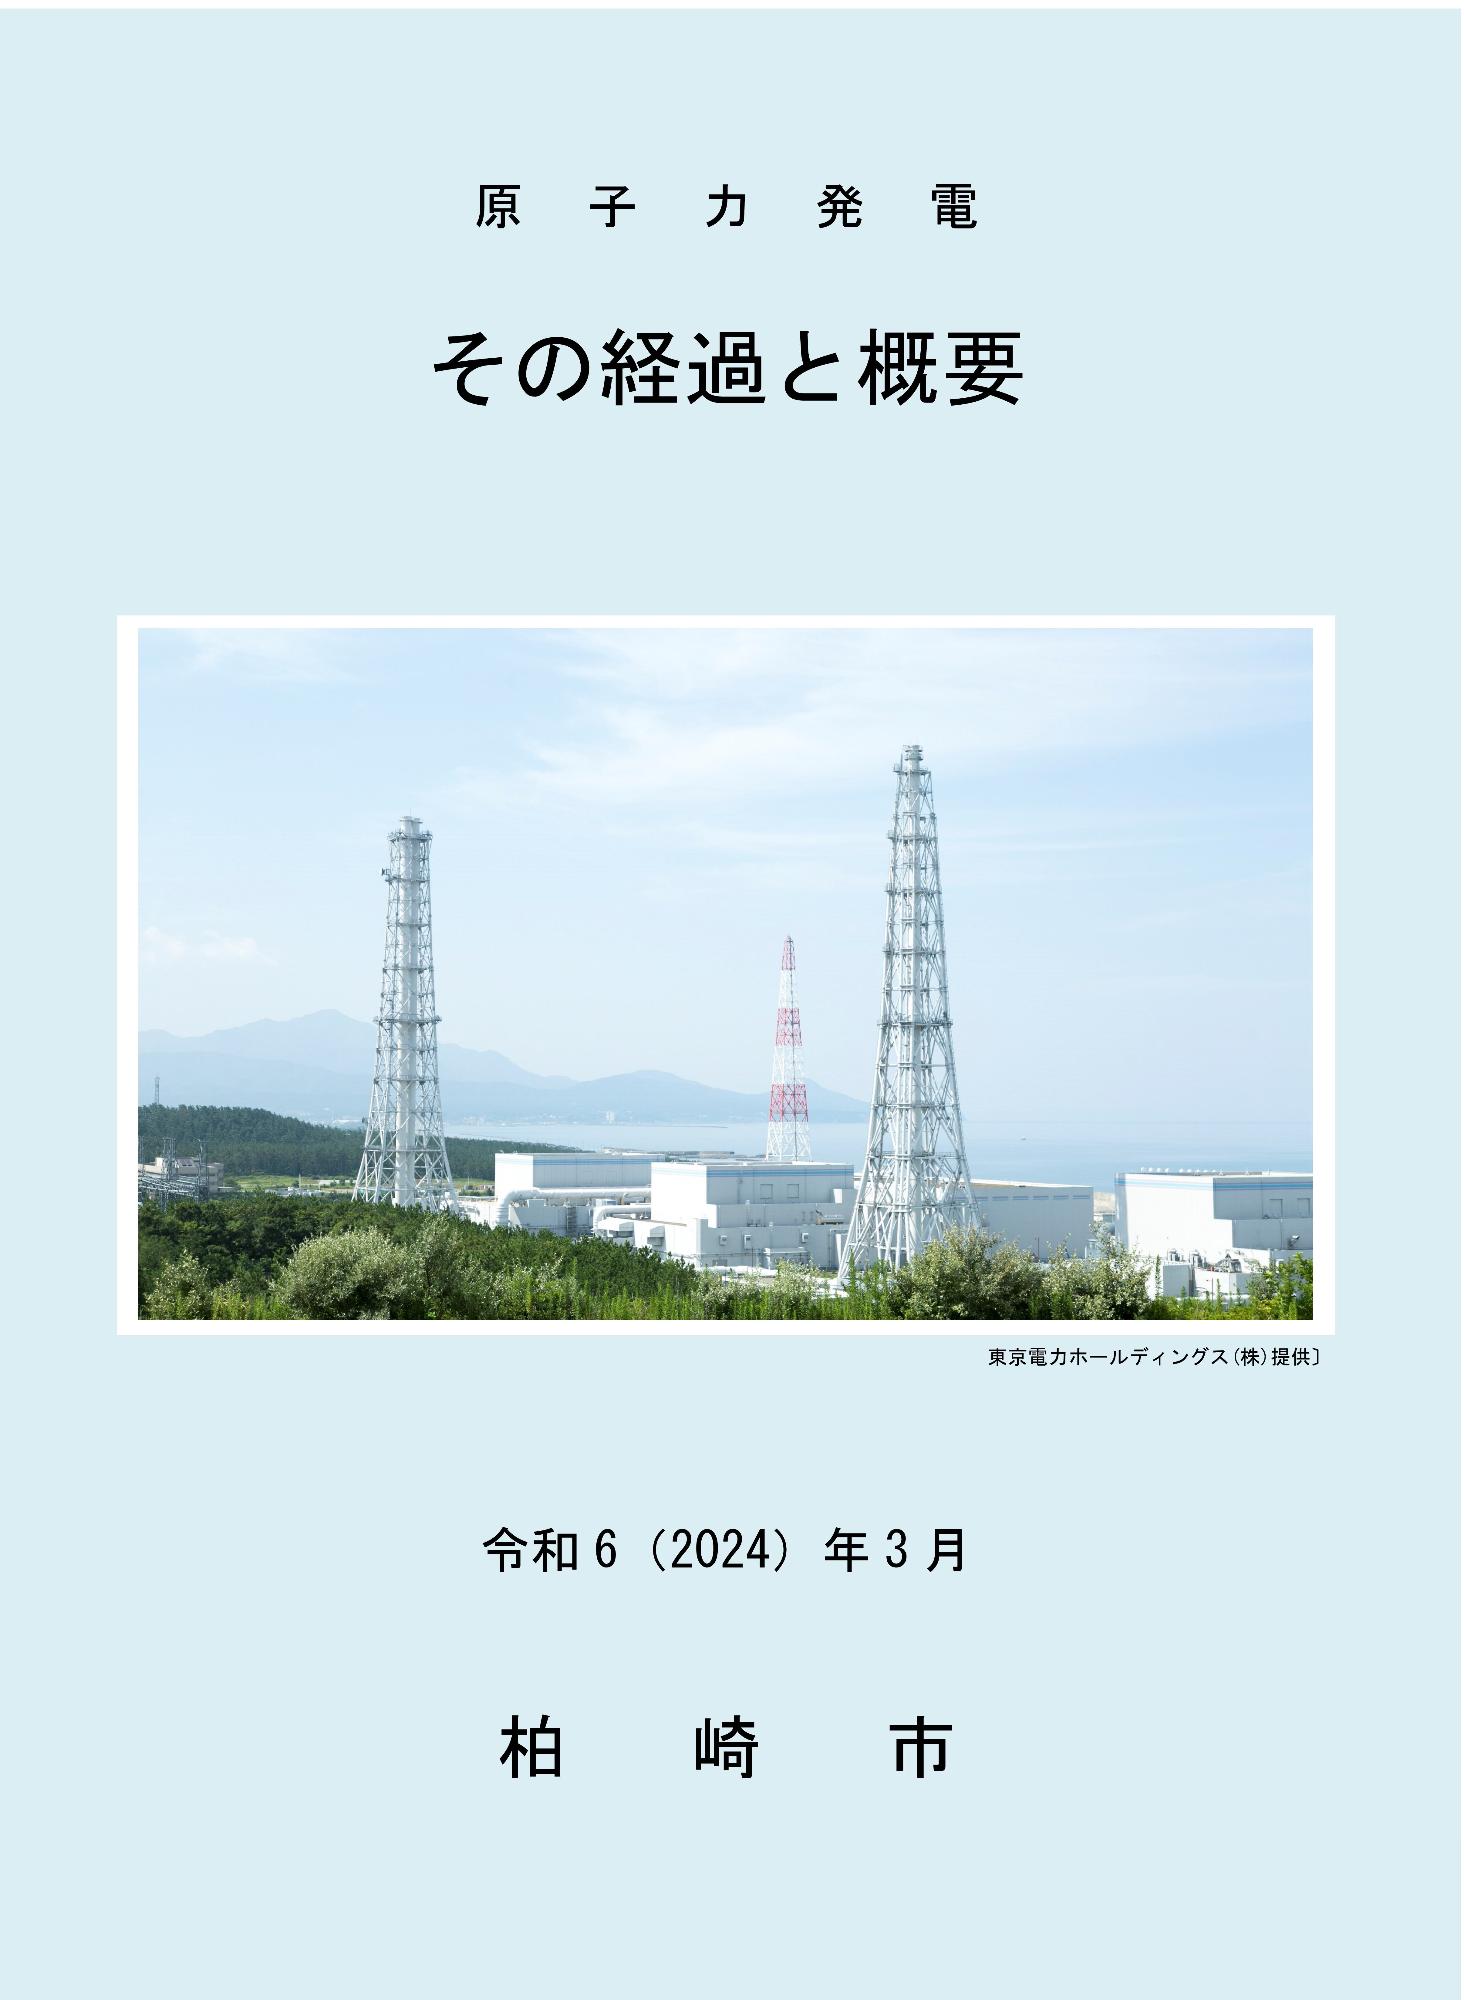 「原子力発電その経過と概要」の表紙写真。西山町方面から見た柏崎刈羽原子力発電所の写真が使われています